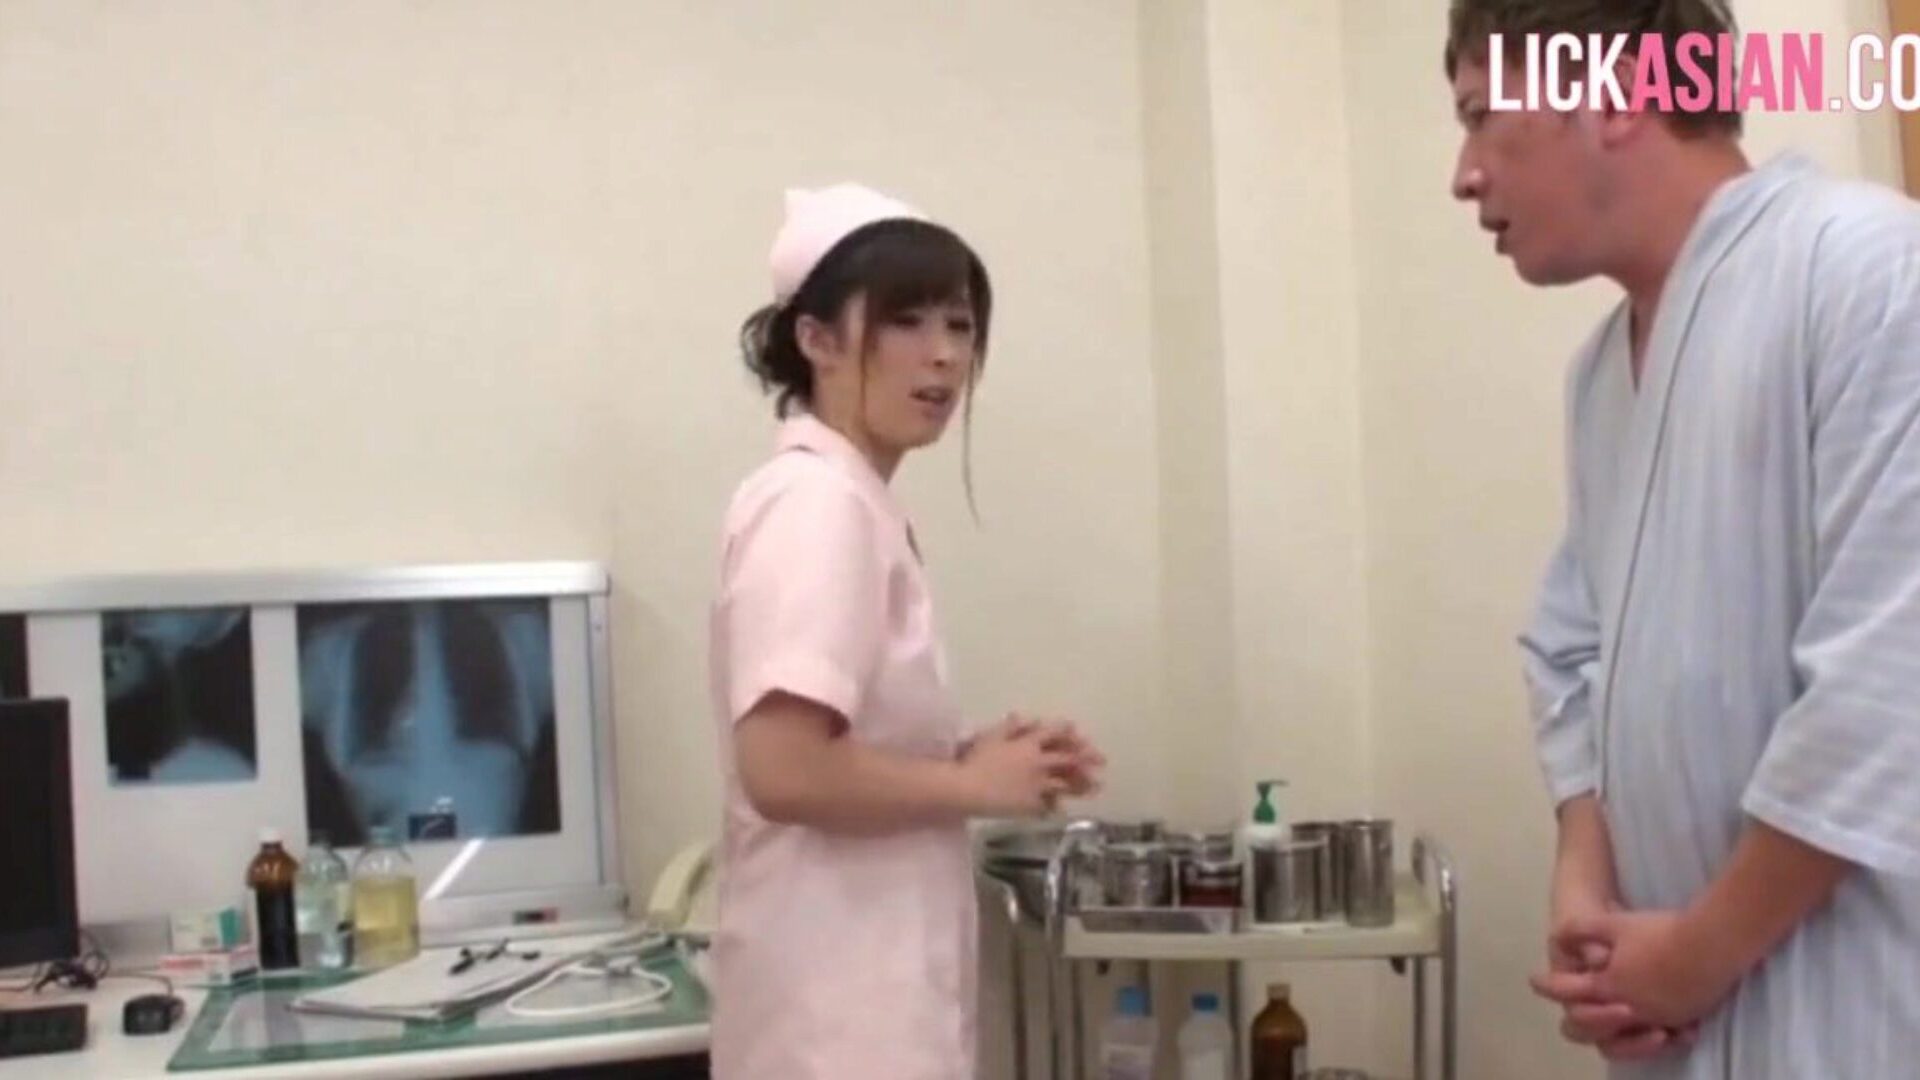 asiatisk sygeplejerske anvender en raunchy chokbehandling på en patient